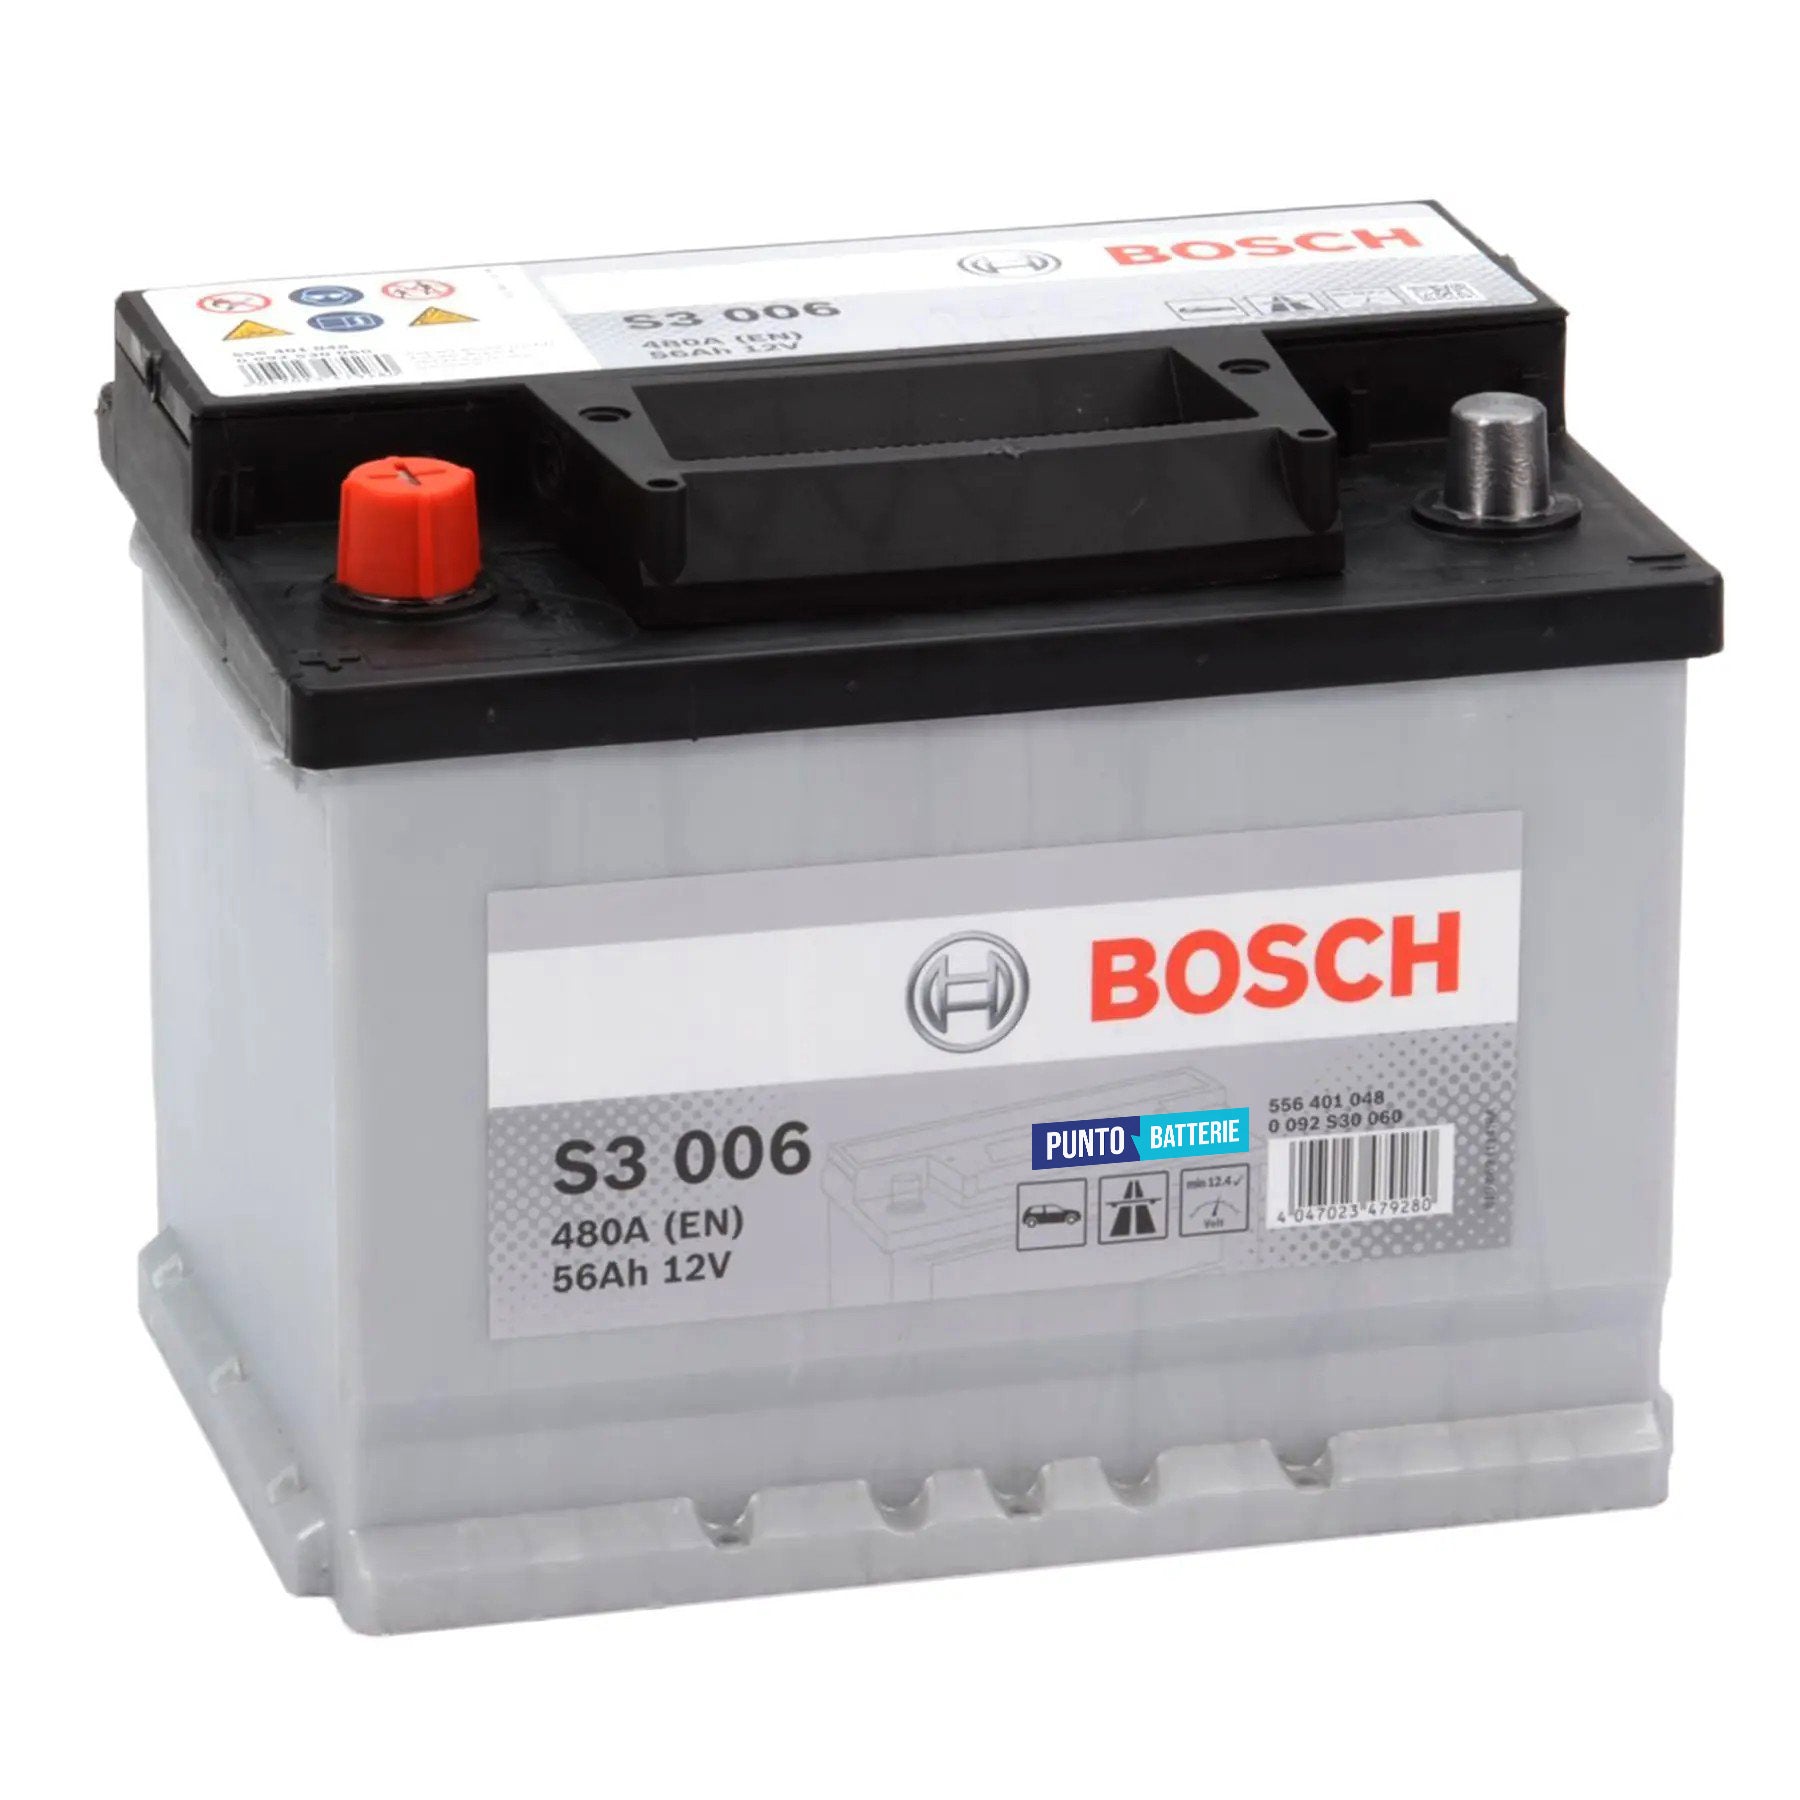 Batteria originale Bosch S3 S3 006, dimensioni 242 x 175 x 190, polo positivo a sinistra, 12 volt, 56 amperora, 480 ampere. Batteria per auto e veicoli leggeri.